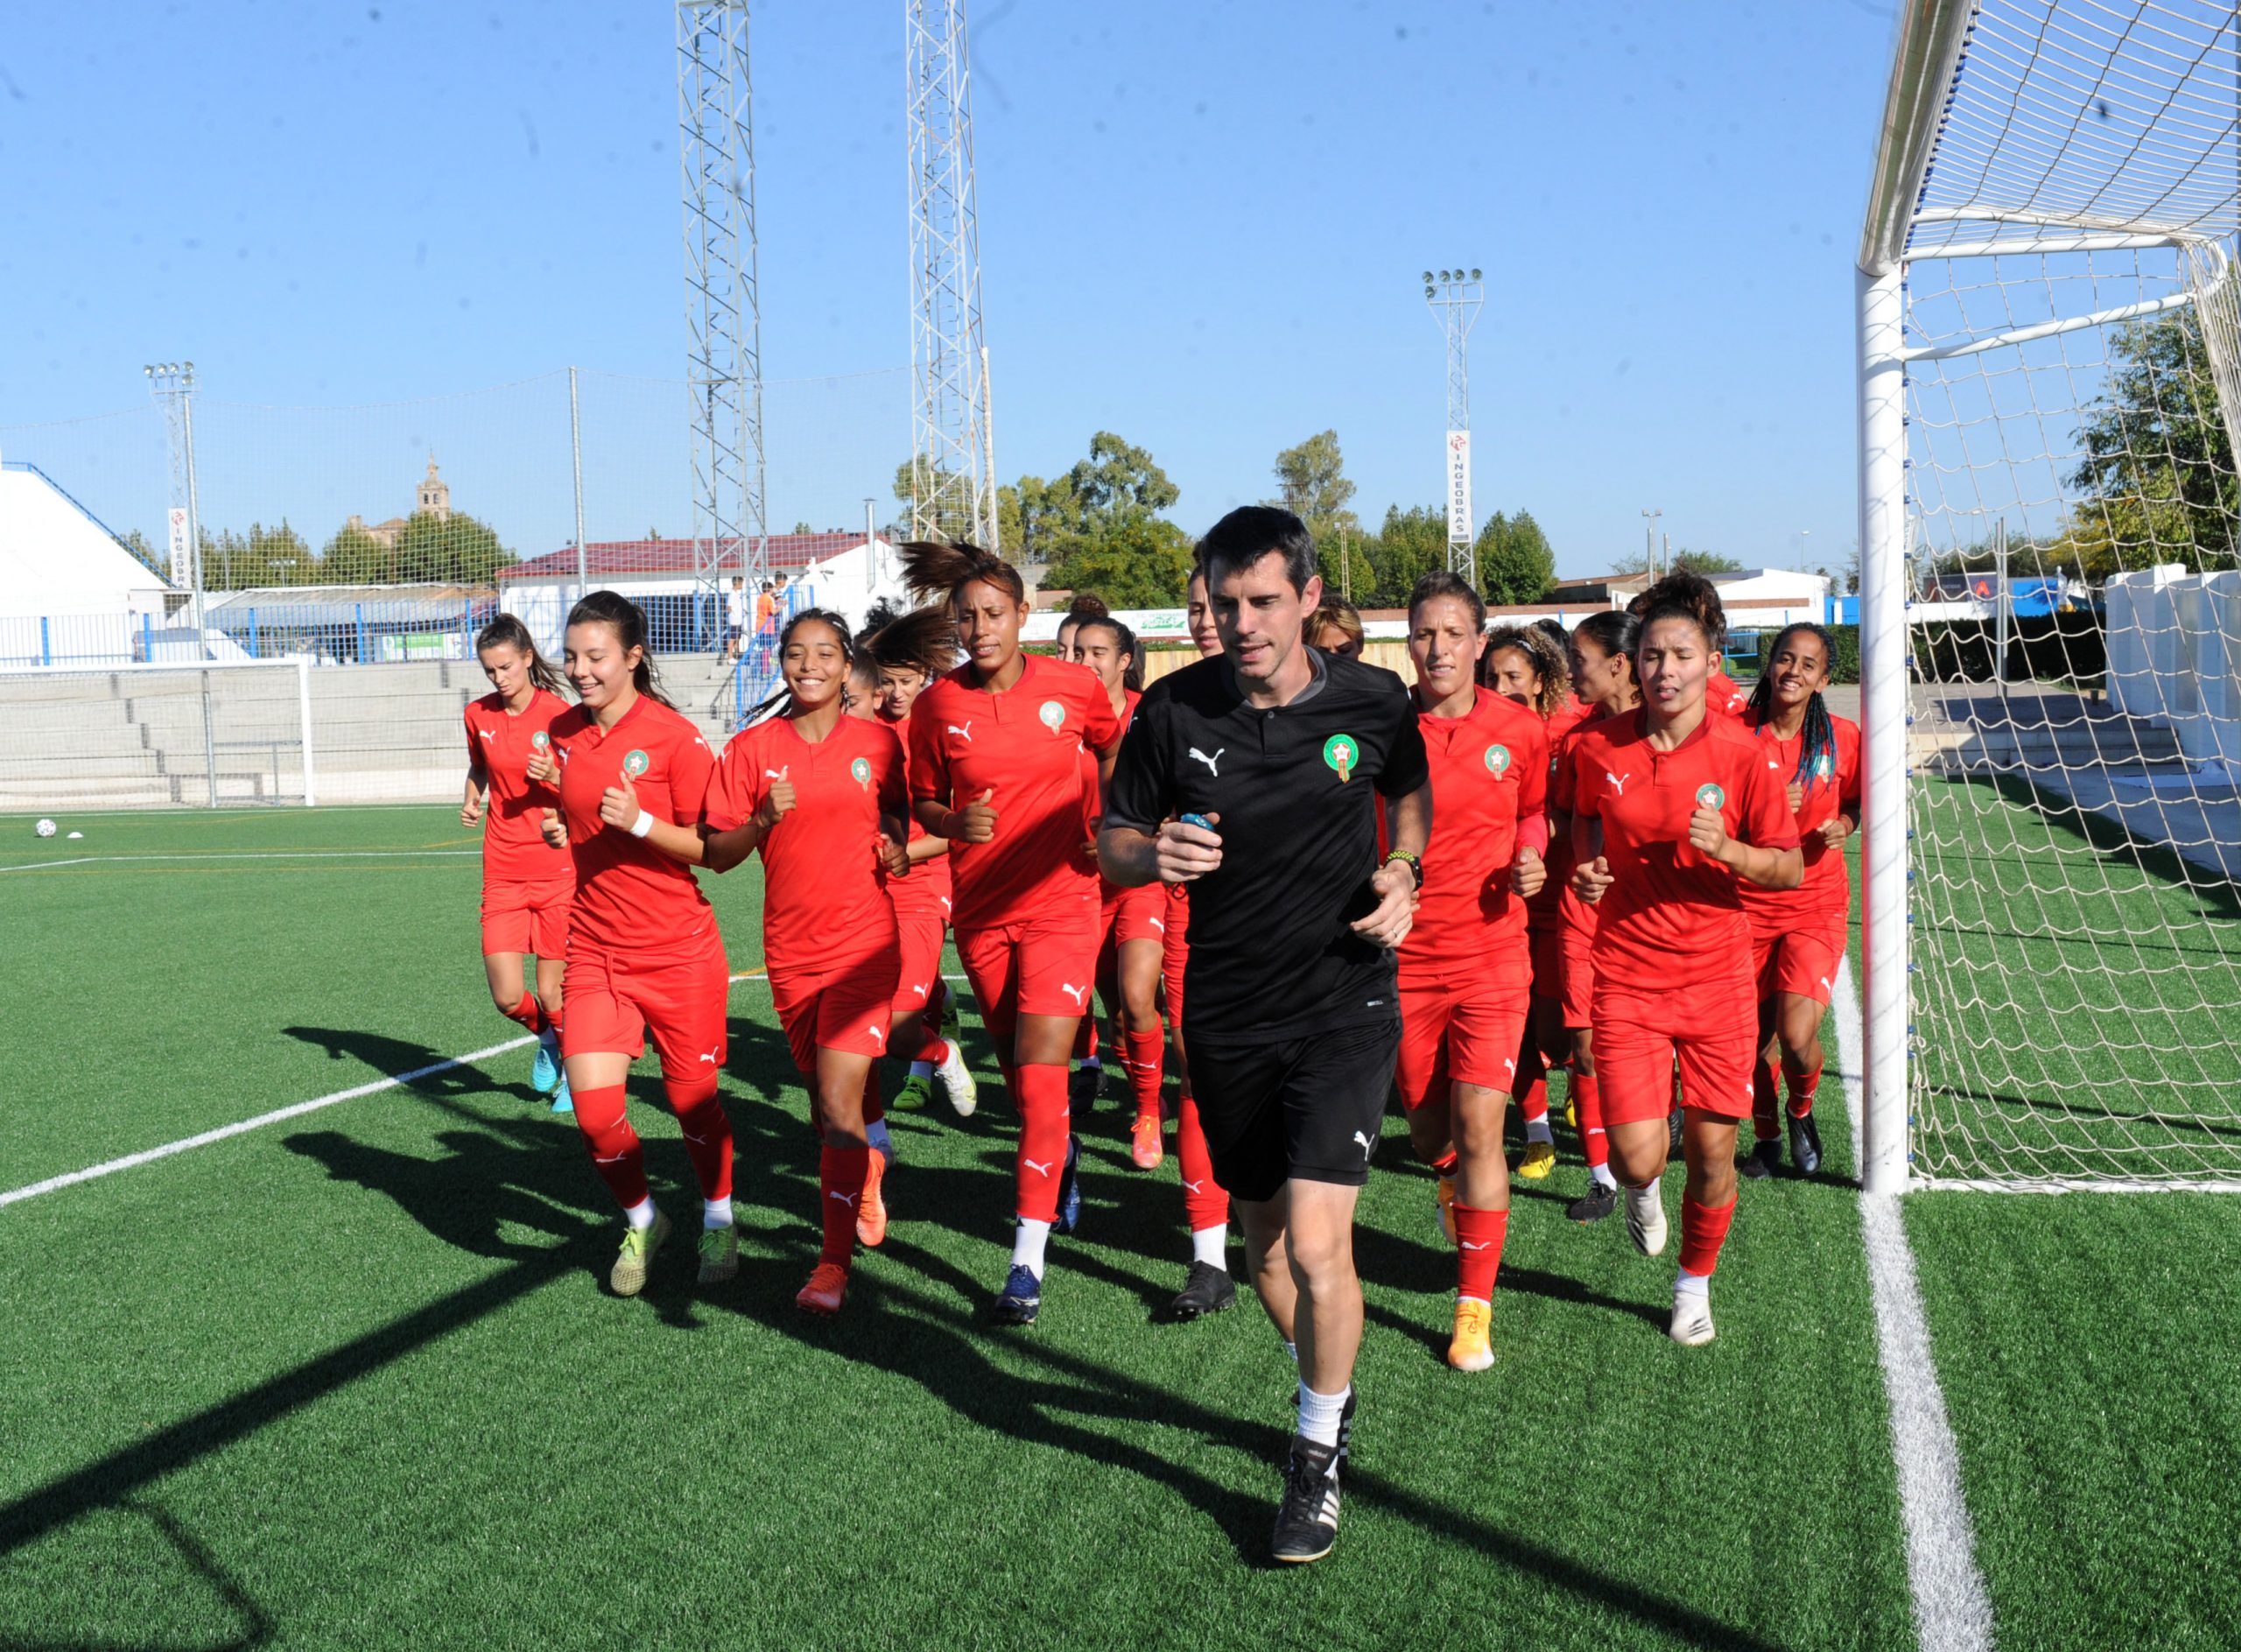 المنتخب الوطني لكرة القدم النسوية يجري أول حصة تدريبية باسبانيا إستعدادا للقاء البلد المضيف